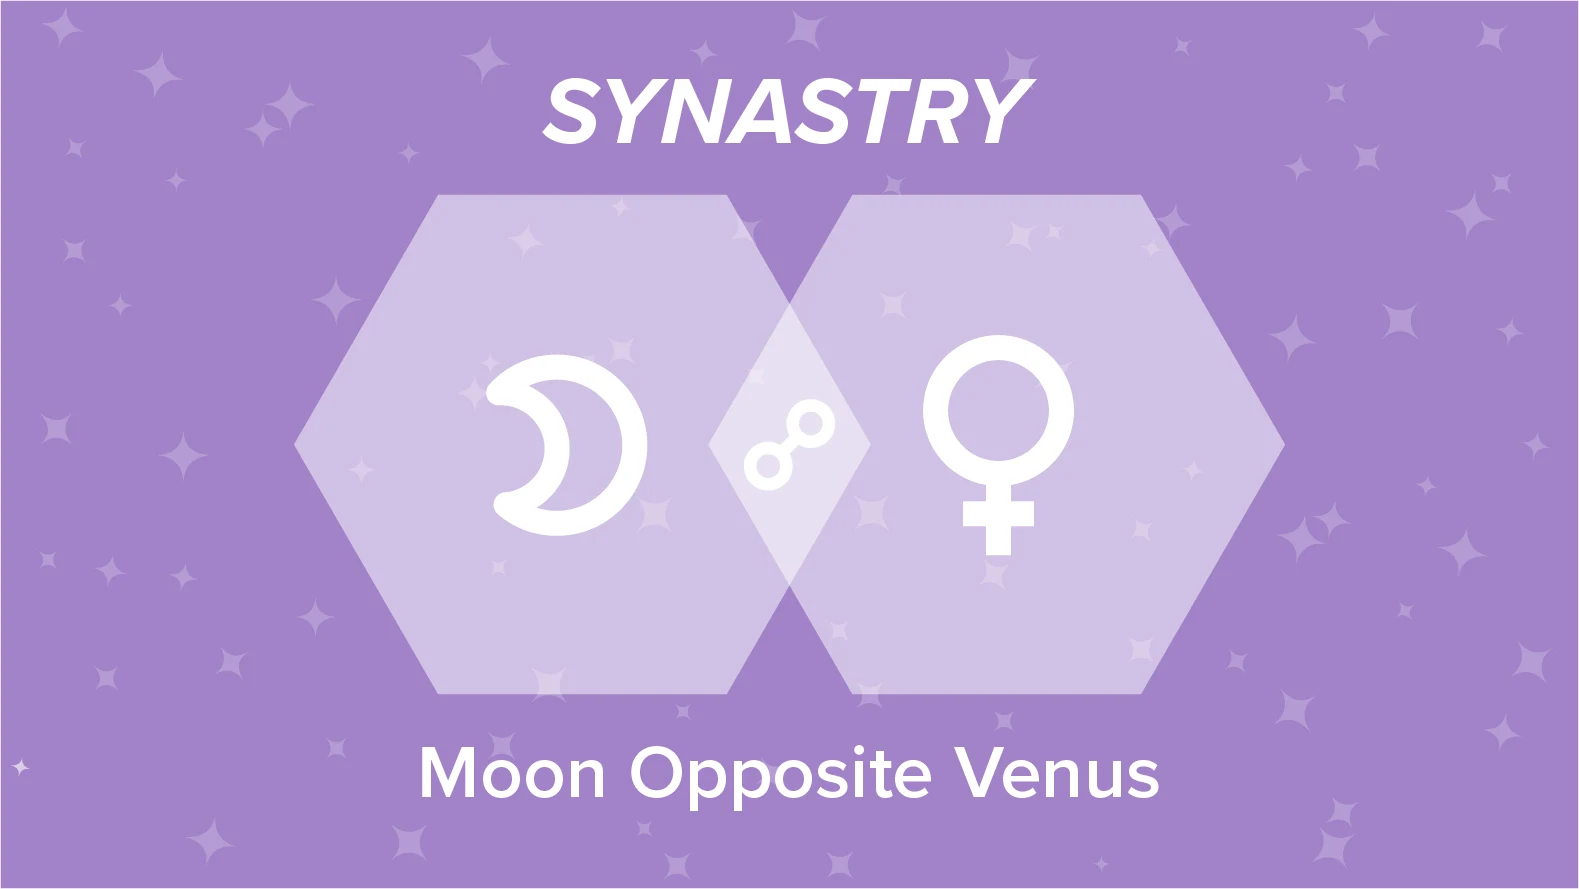 Moon Opposite Venus Synastry